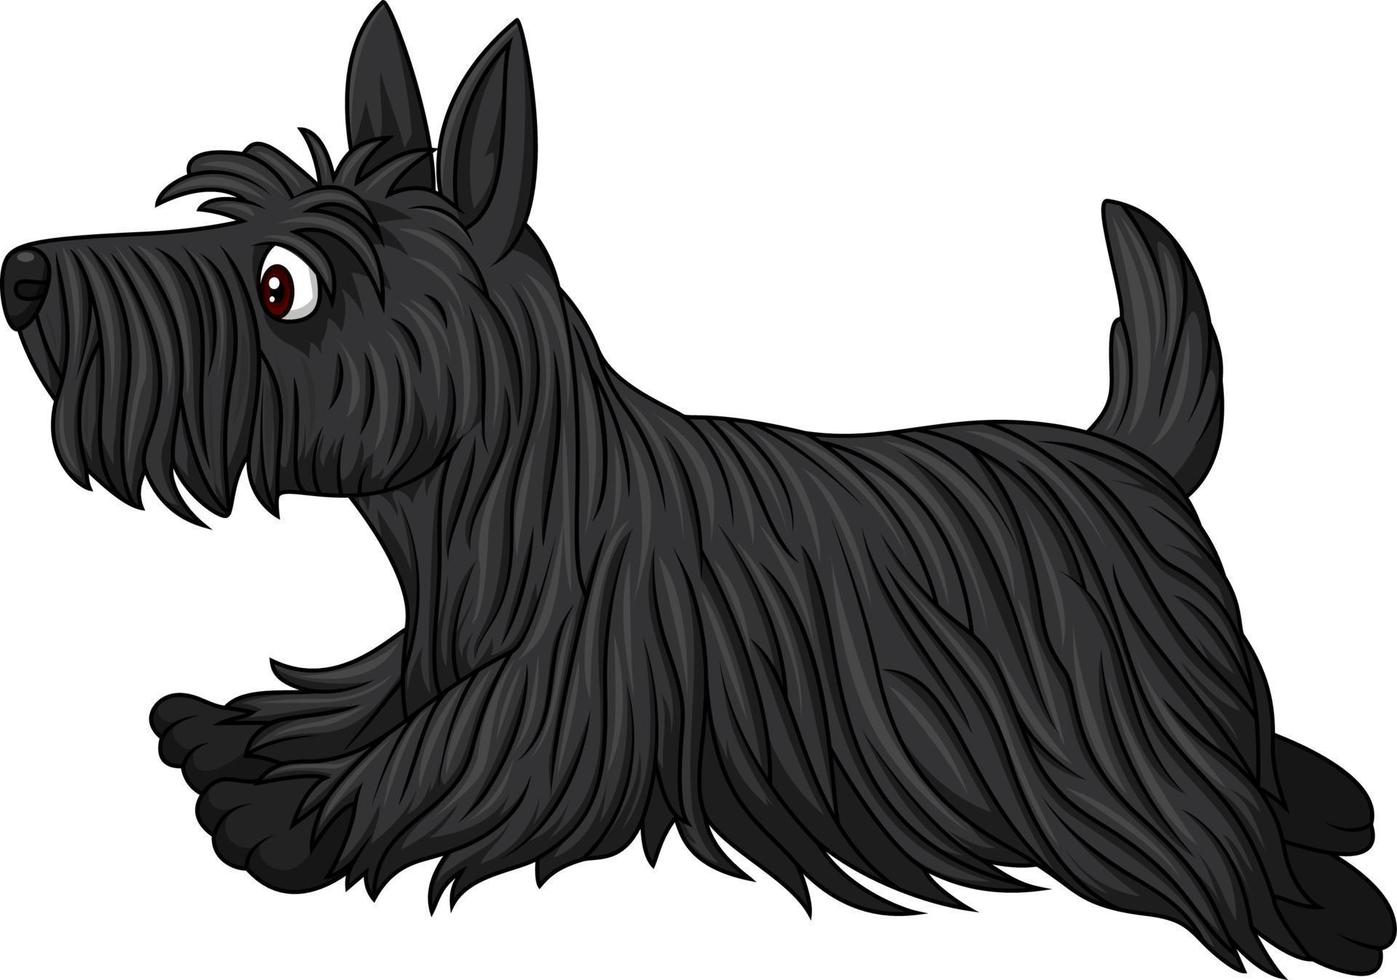 Scottish terrier dog breed running vector